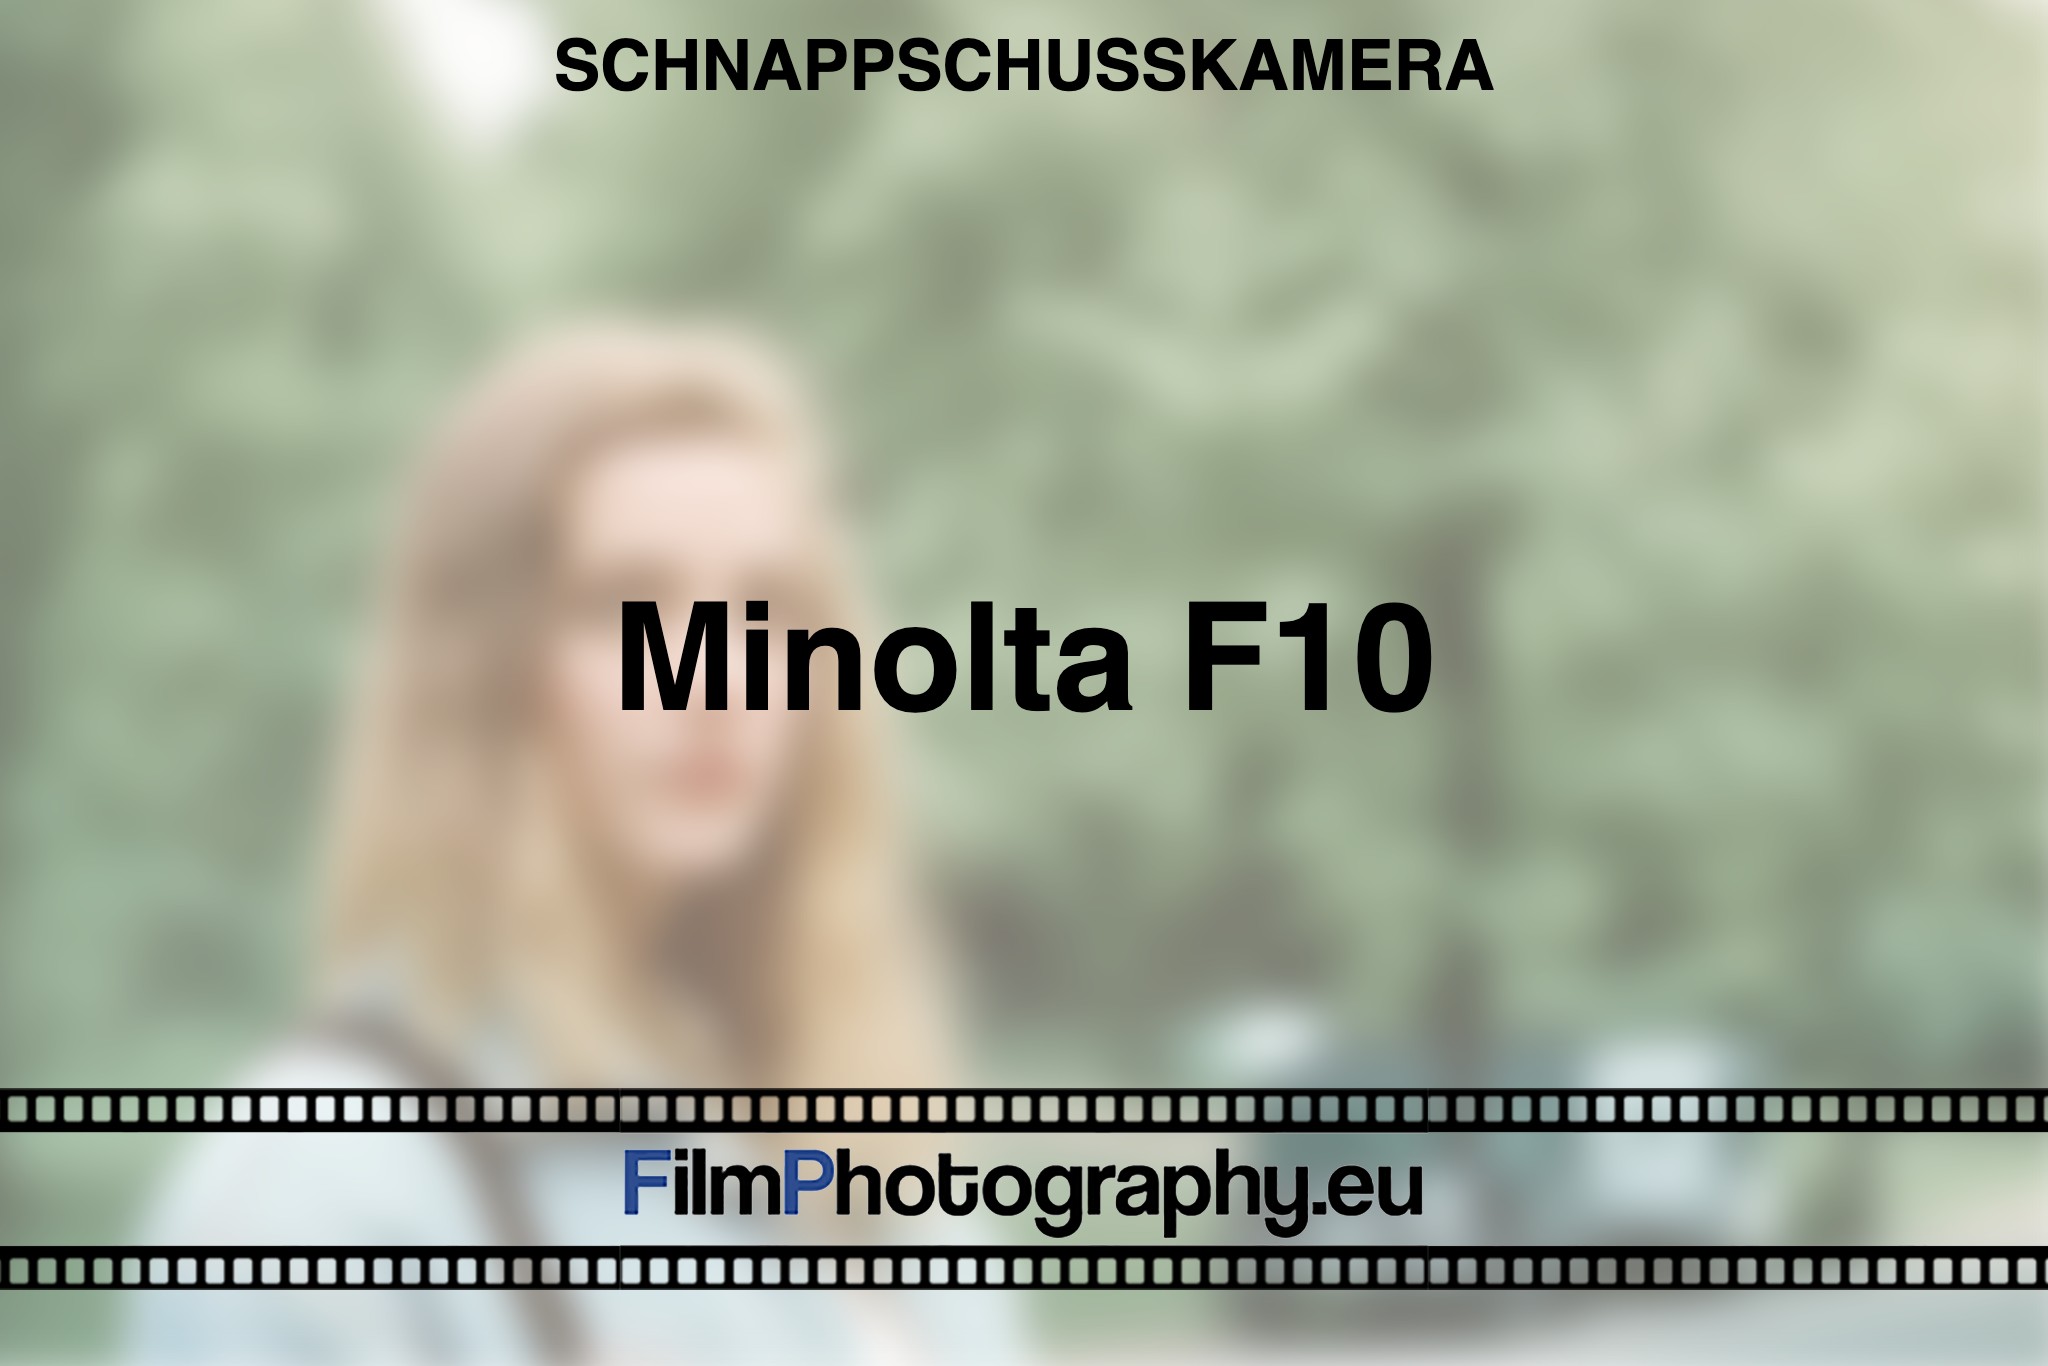 minolta-f10-schnappschusskamera-bnv